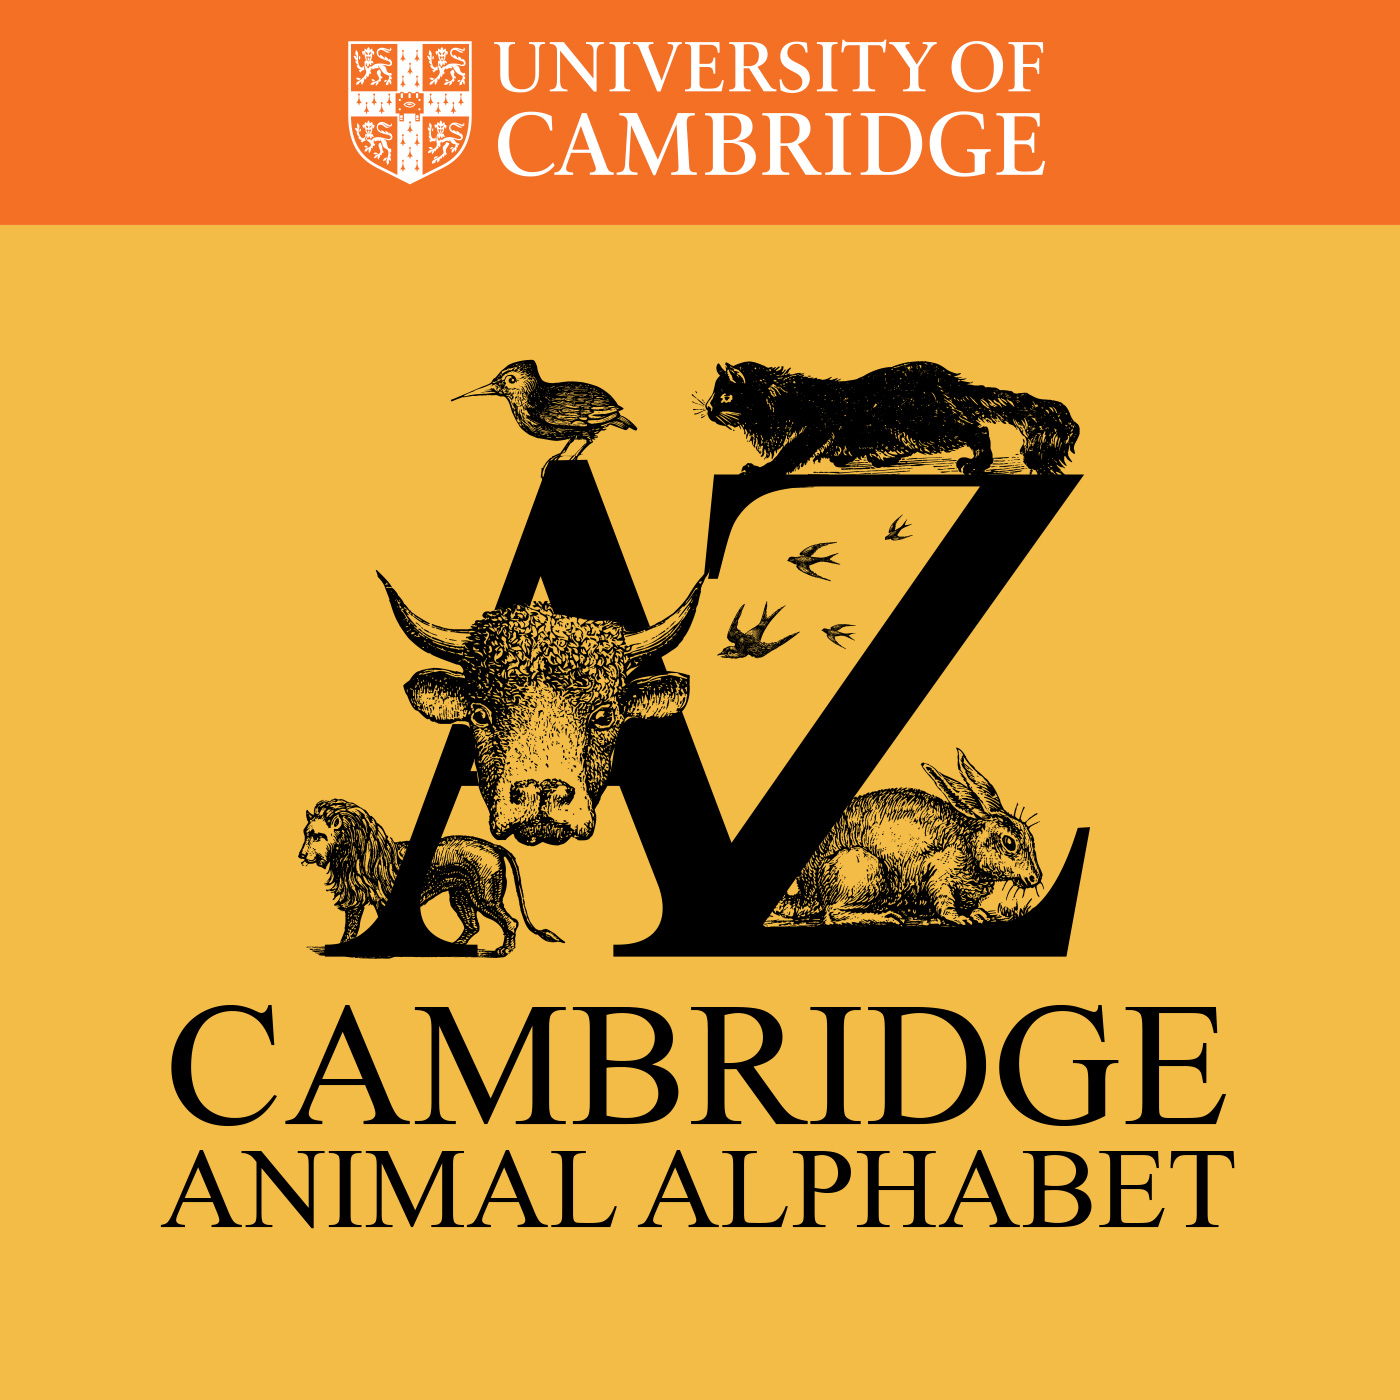 The Cambridge Animal Alphabet series's image